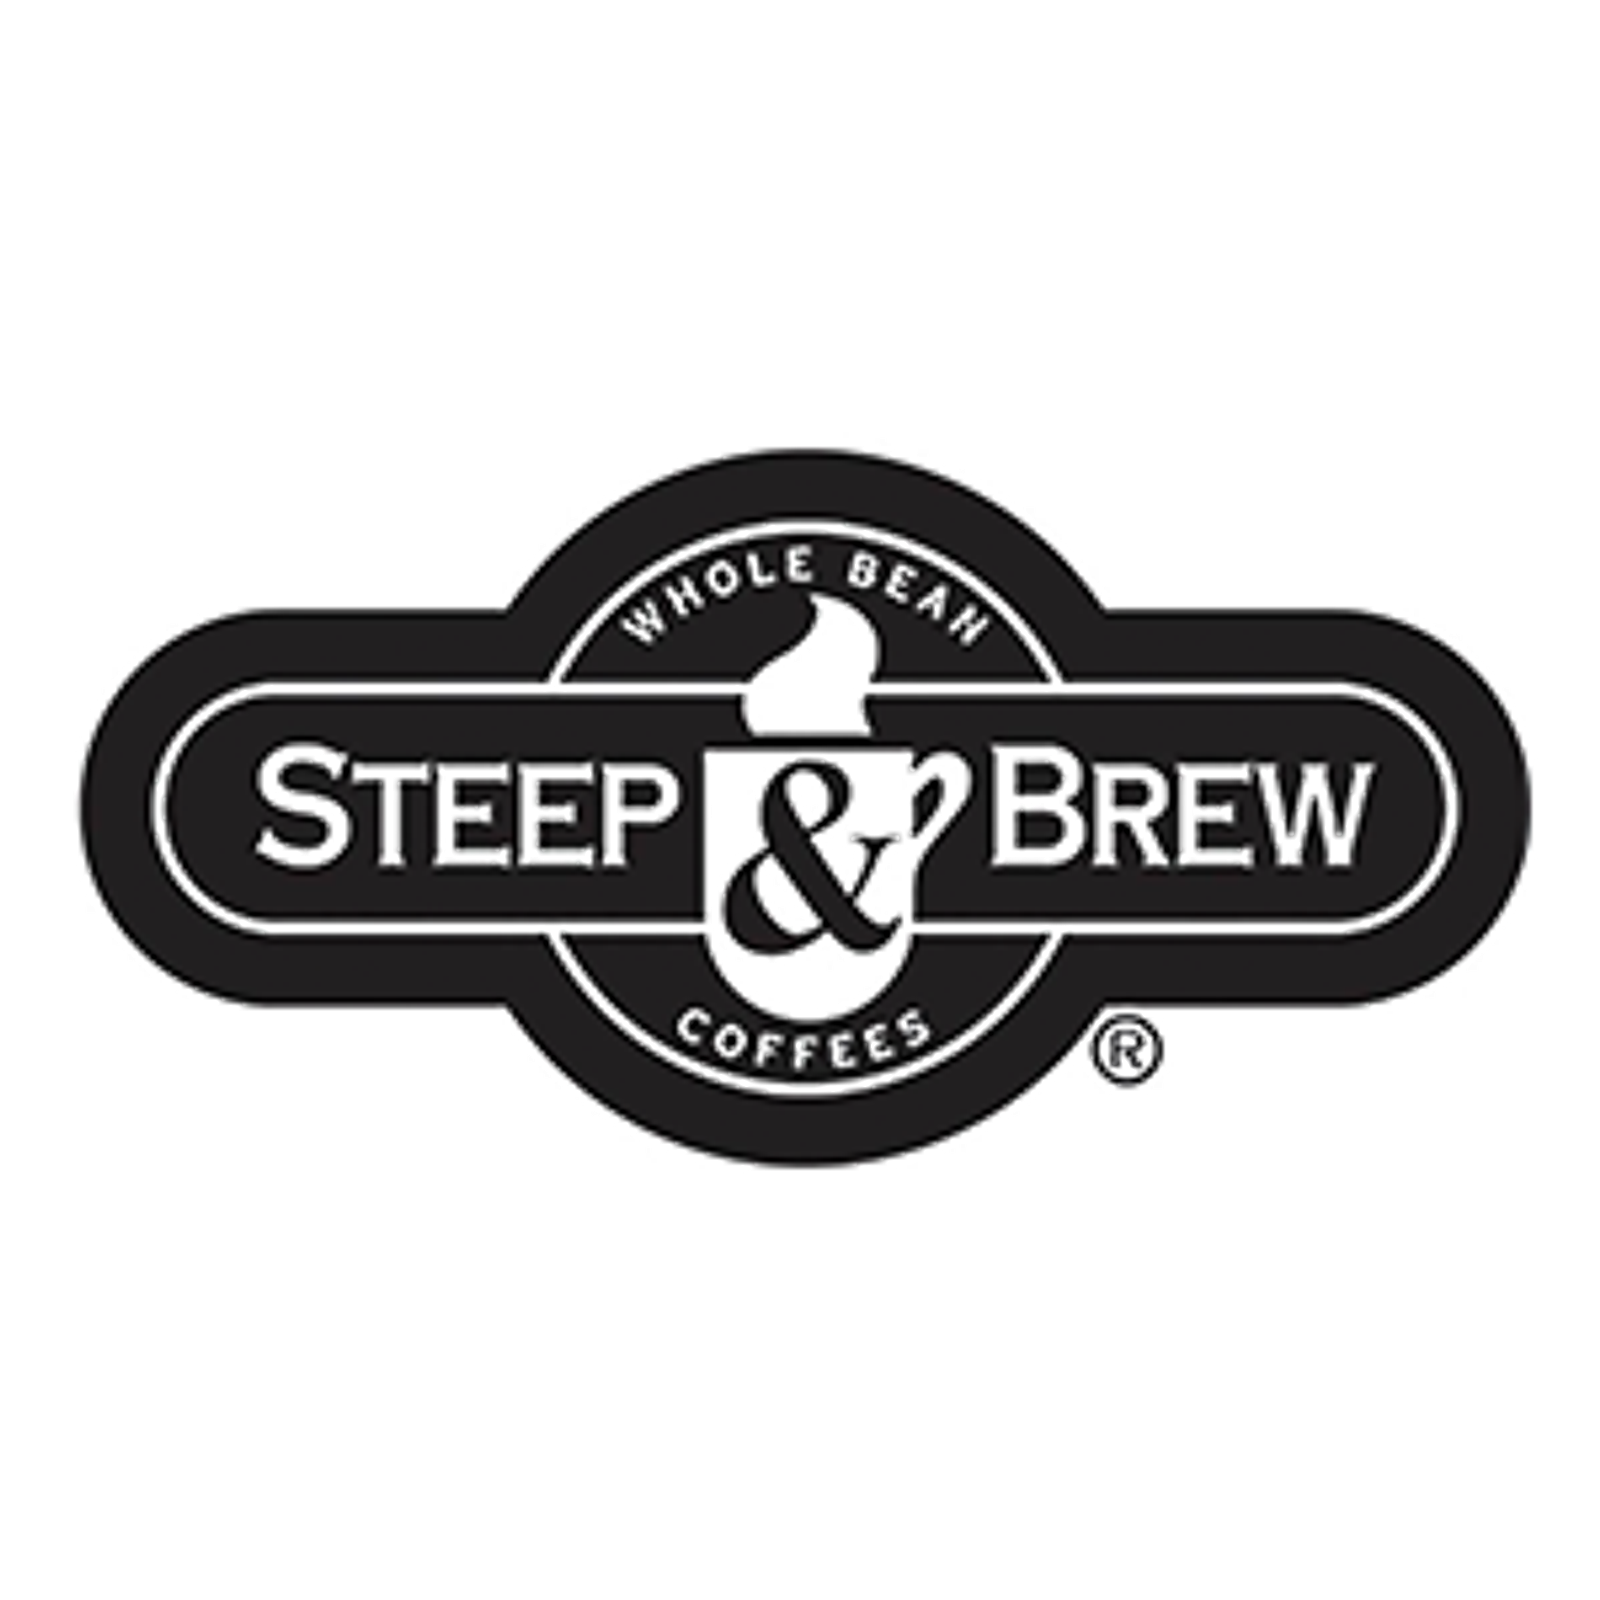 Steep N Brew